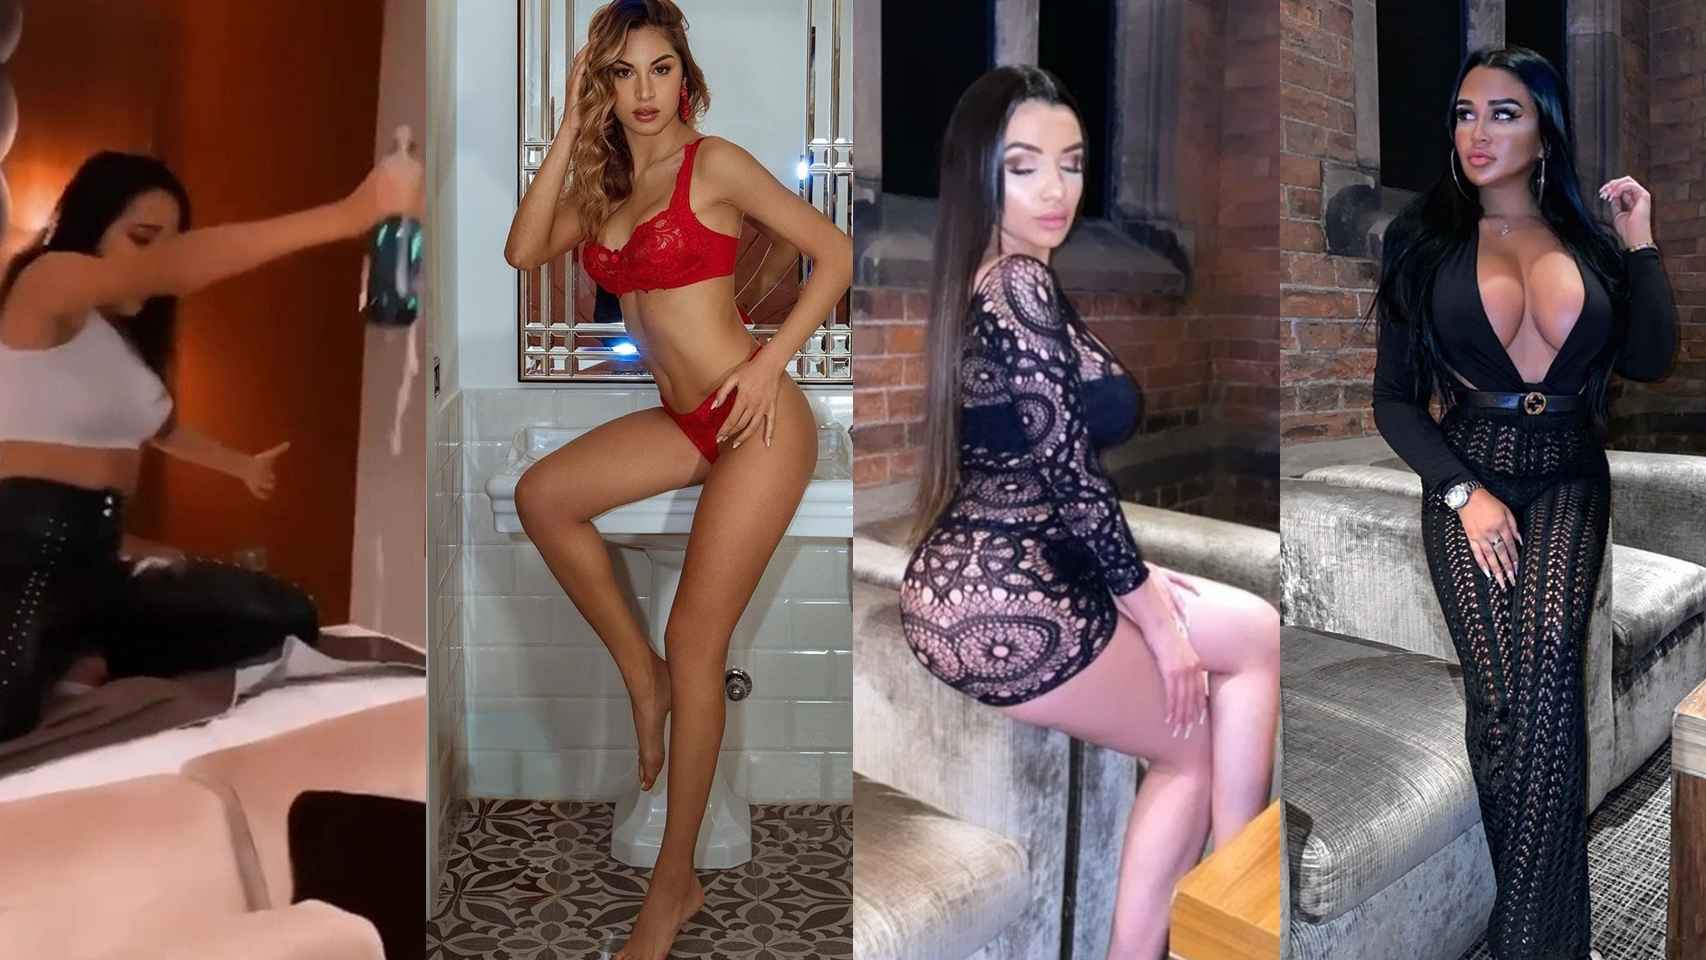 Marta Tejada agitando una botella, Chira Giuffrida, Amira Paula e Isa Rivera, las modelos de la fiesta